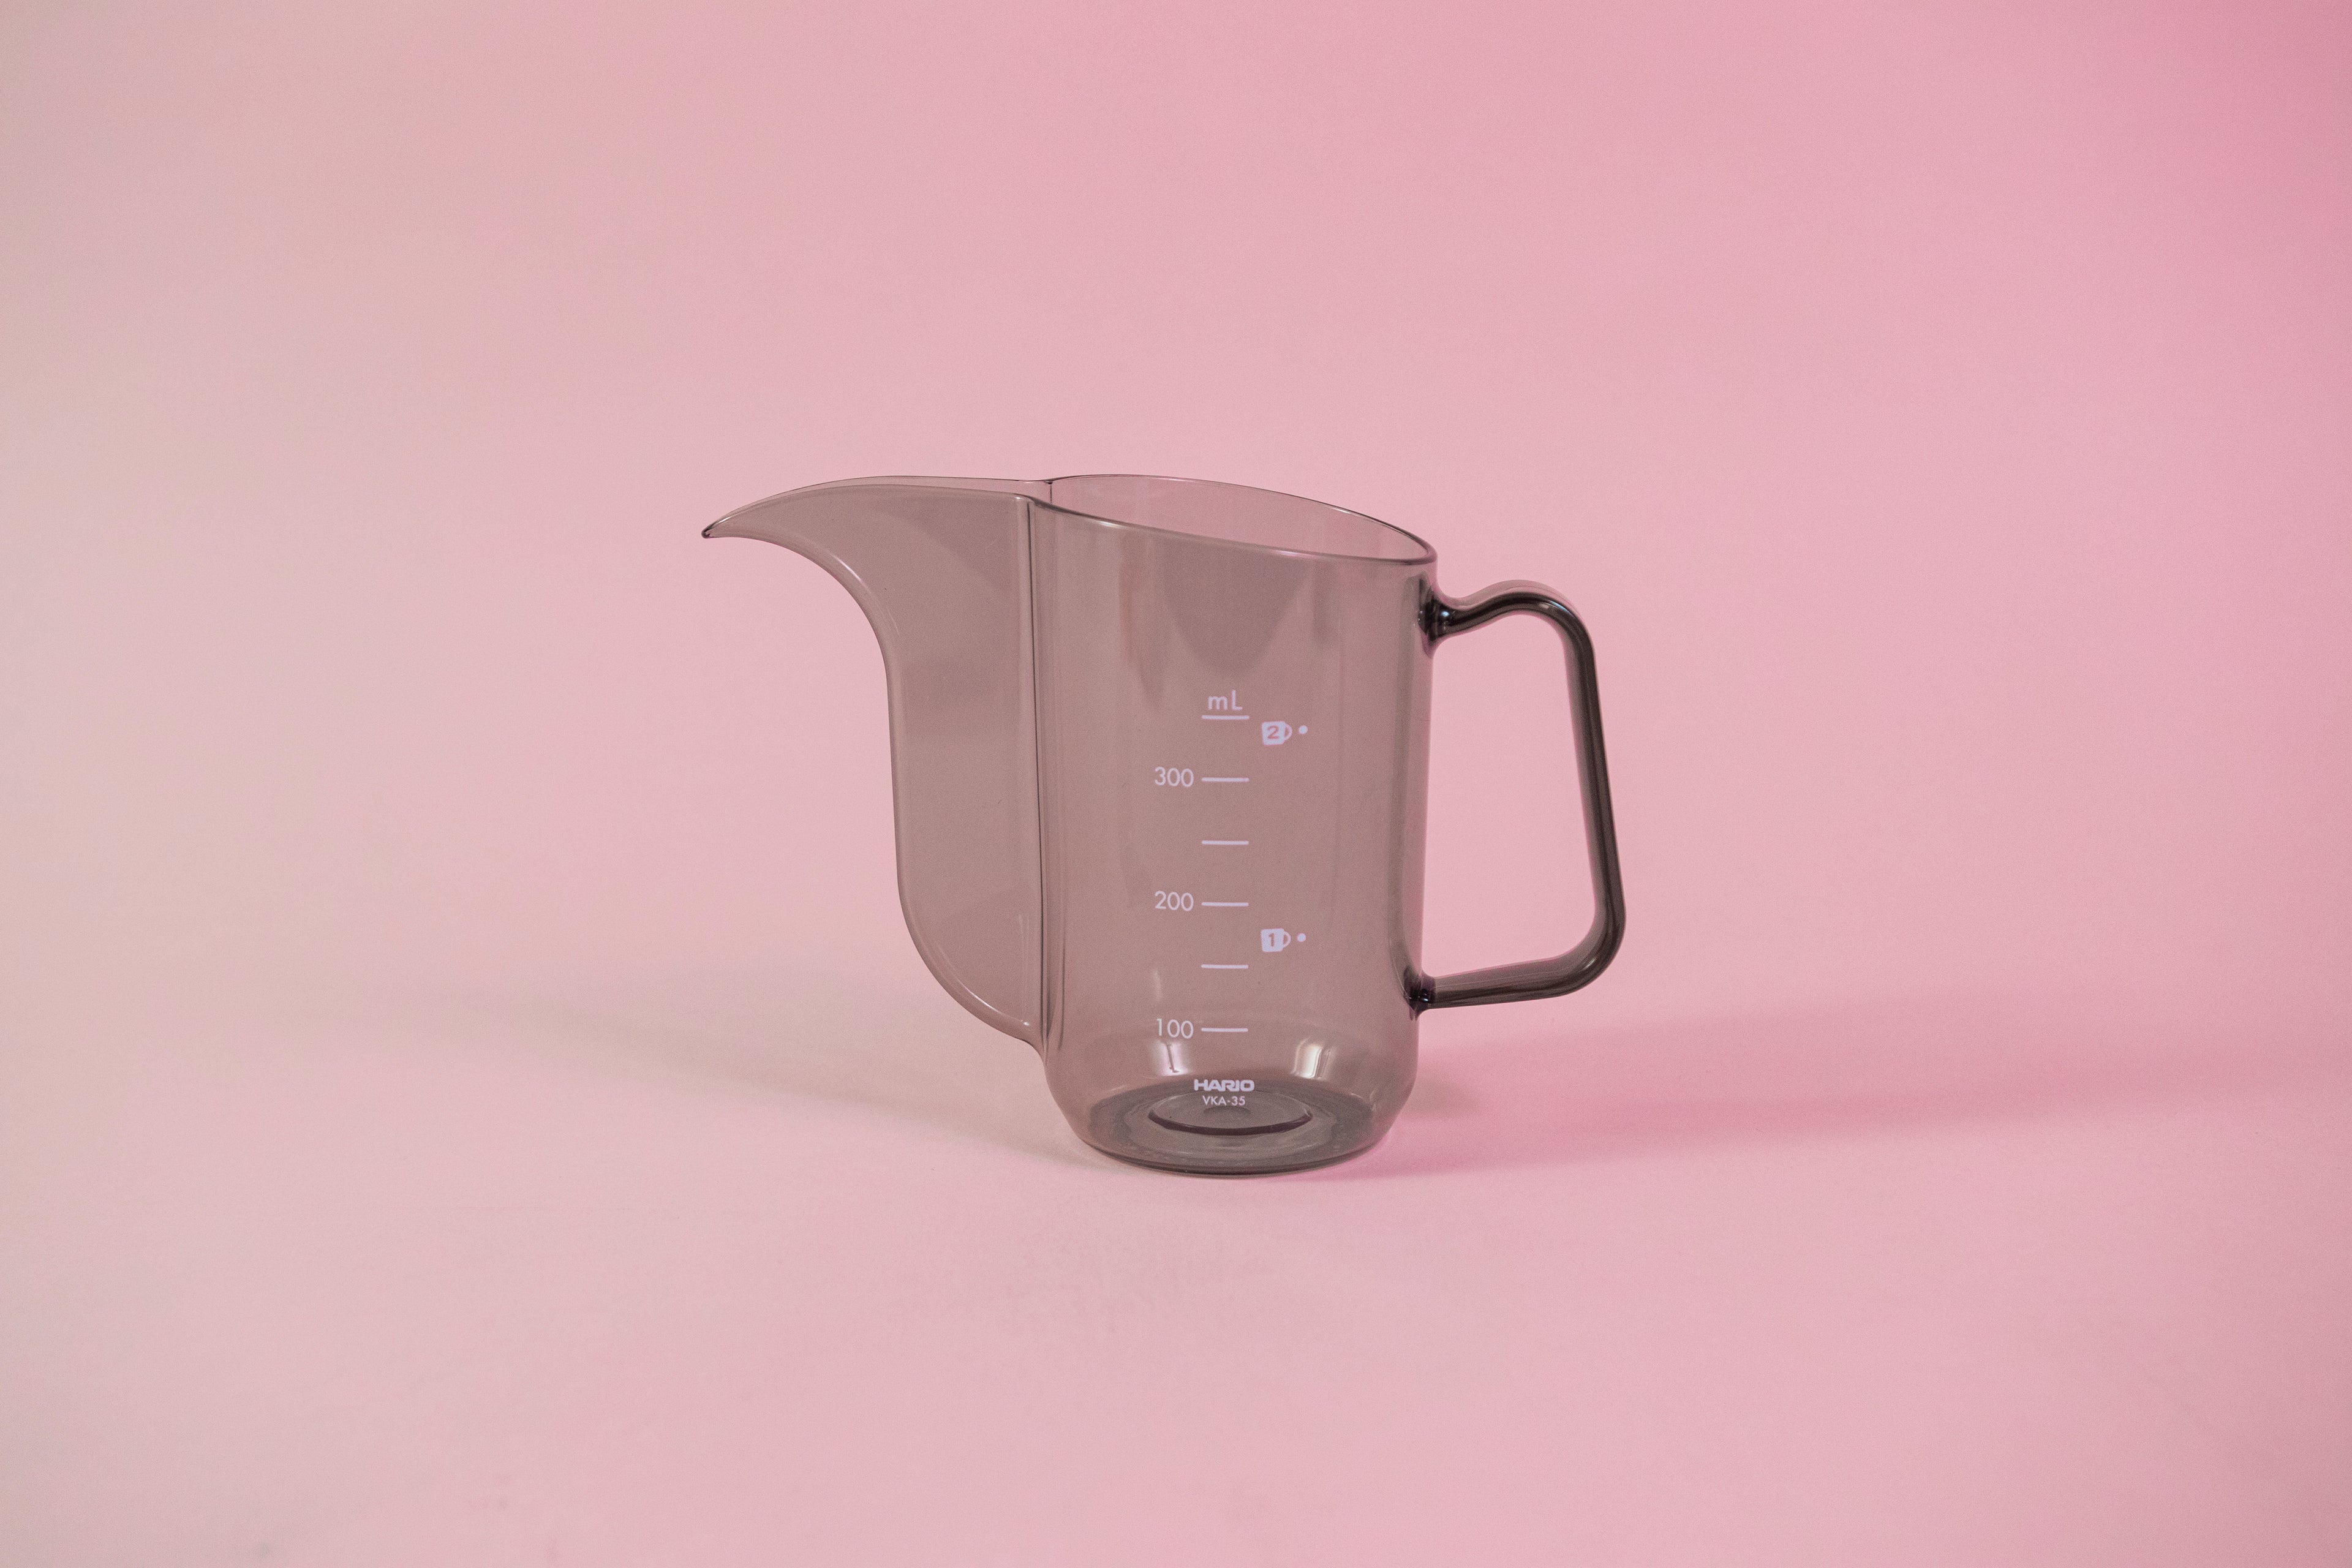 Transparent black plastic cup with handle and gooseneck style pour spout.